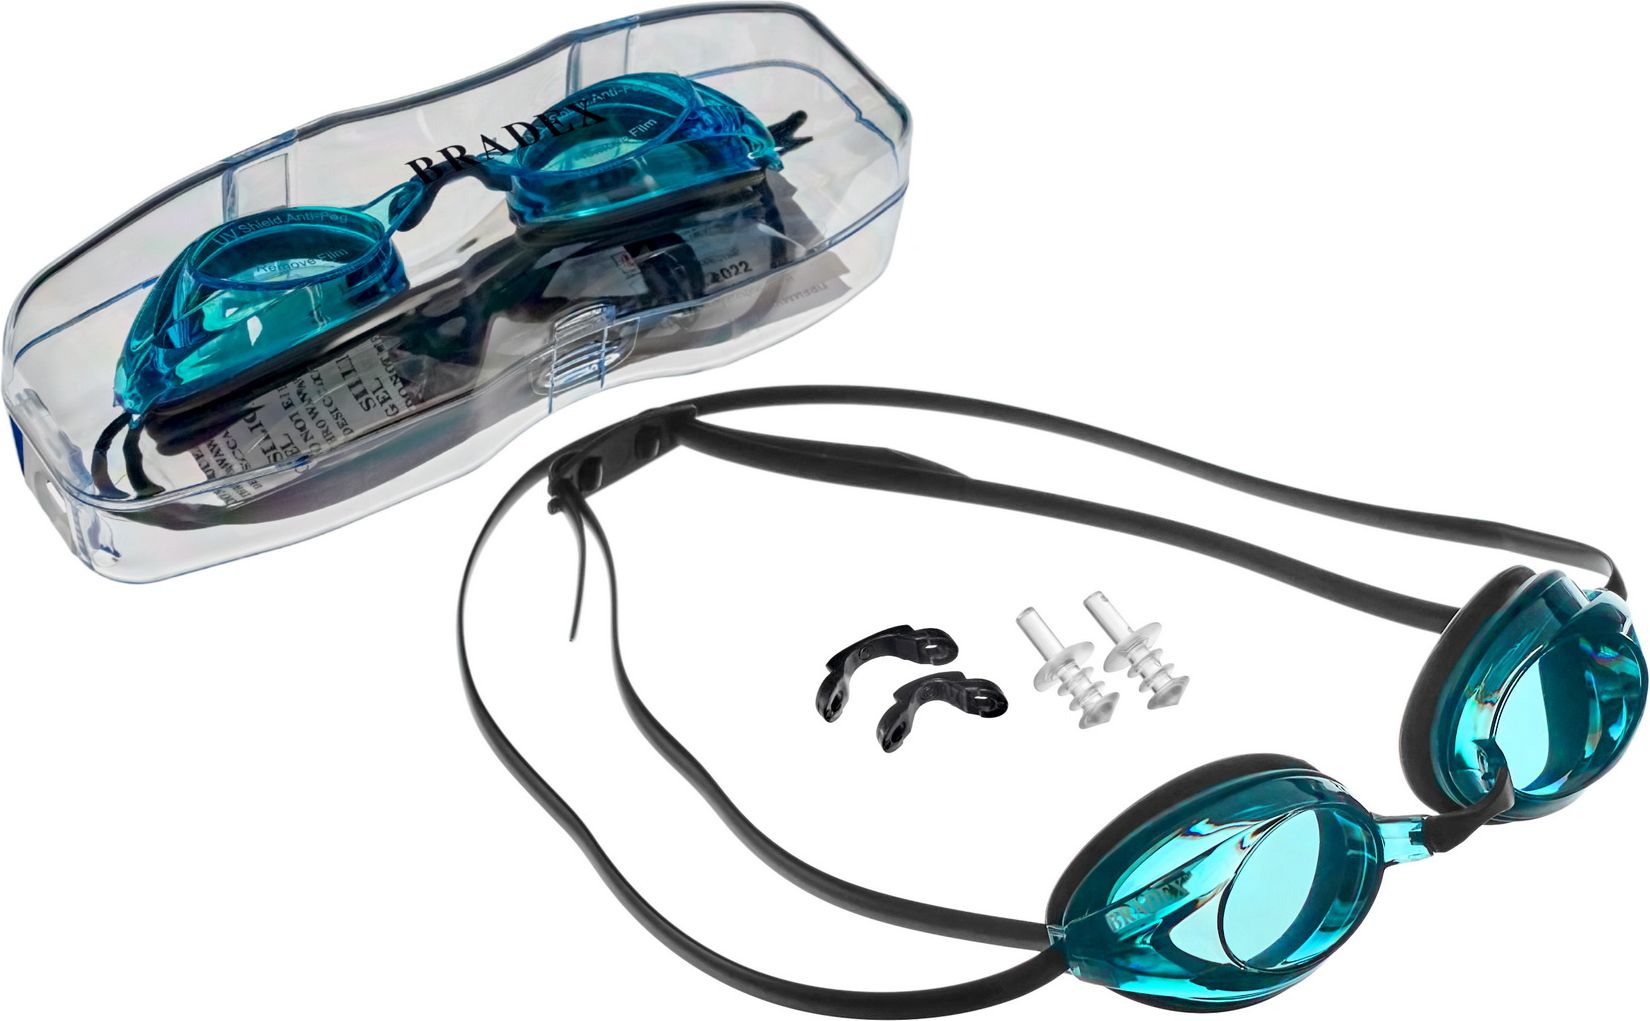 Очки для плавания Bradex, серия «Спорт», черные, цвет линзы-голубой